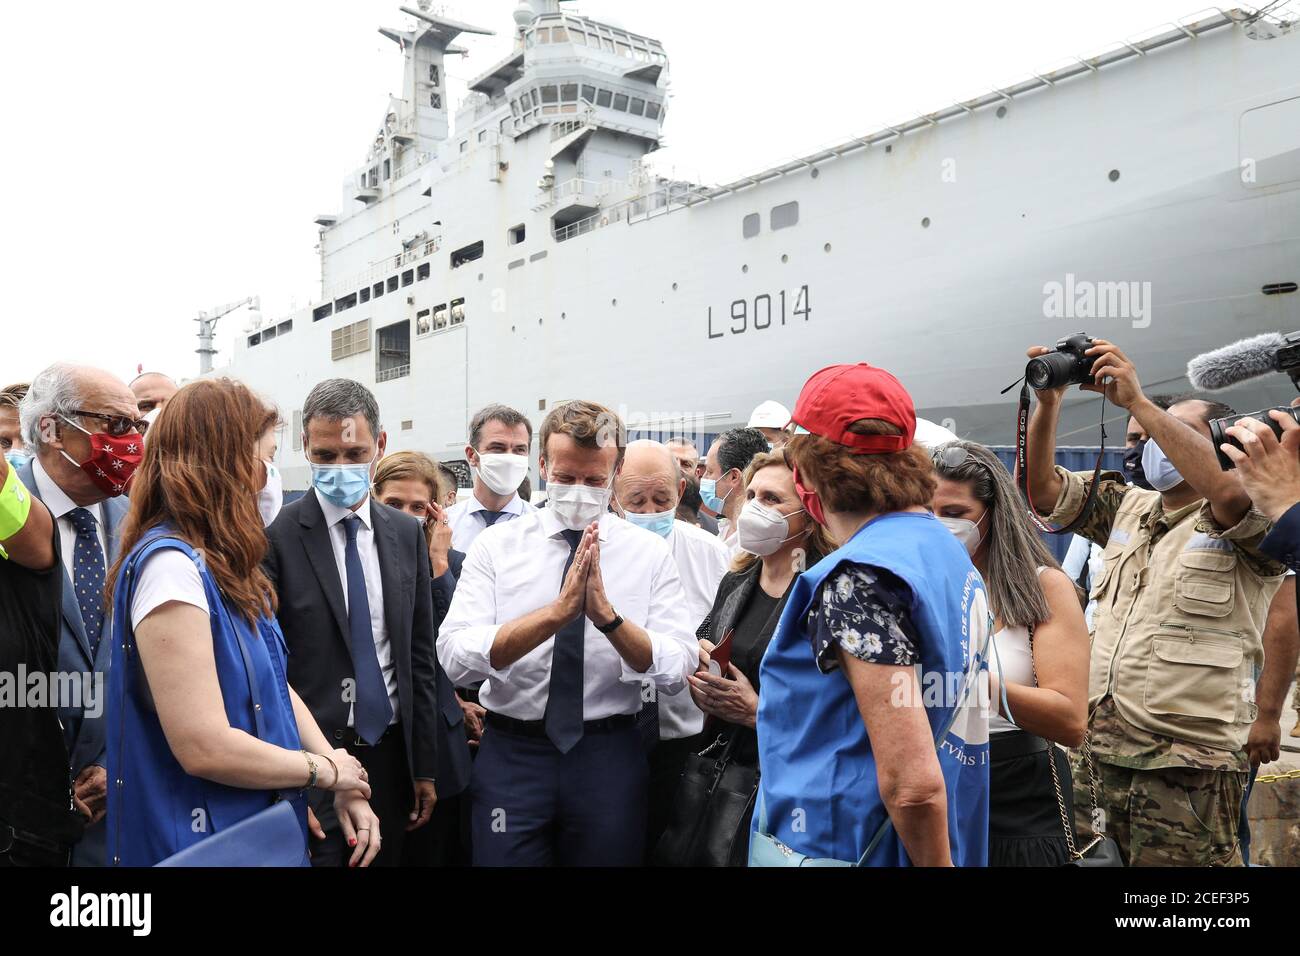 El presidente francés Emmanuel Macron se reúne con representantes de la ONU y ONG movilizadas para la reconstrucción del puerto de Beirut, en Beirut, Líbano, el 1 de septiembre de 2020. Stephane Lemouton/Pool vía REUTERS Foto de stock